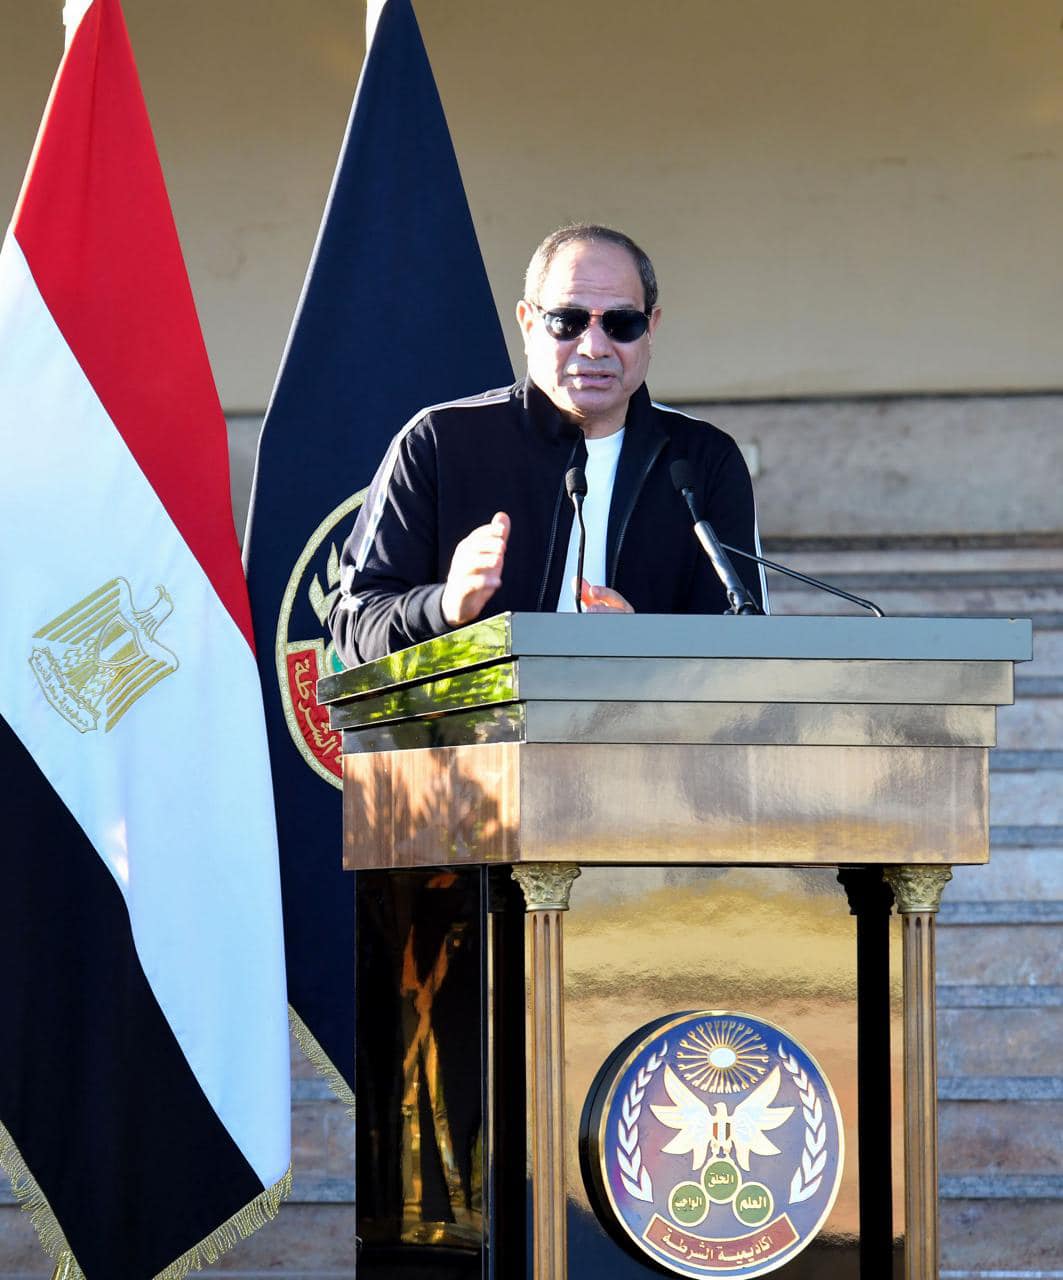 432974645 970591594429569 6945561448801743829 n مصر .. الرئيس السيسي: الدولة اتخذت خطوات لتحسين وتطوير وإصلاح الموقف الاقتصادي